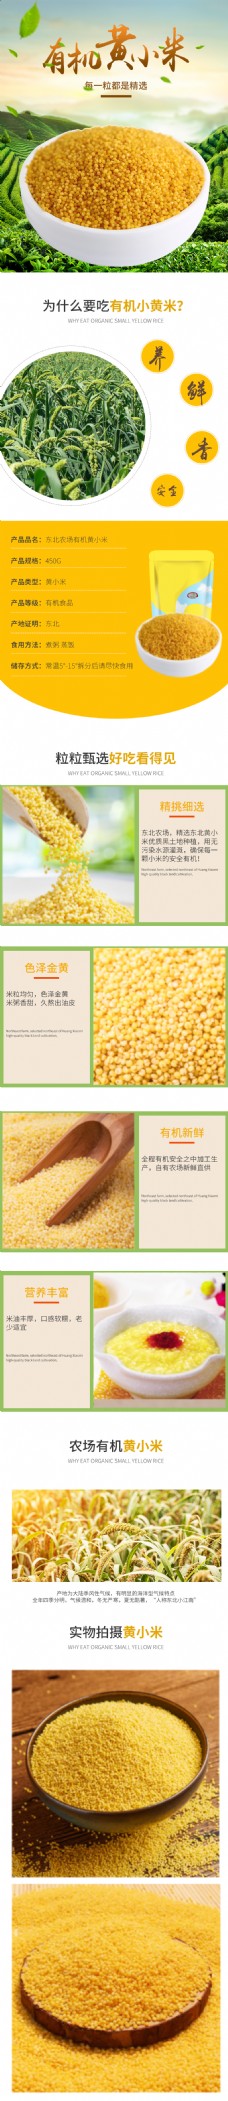 五谷杂粮小米绿色食品粗粮电商淘宝详情页描述模板PSD